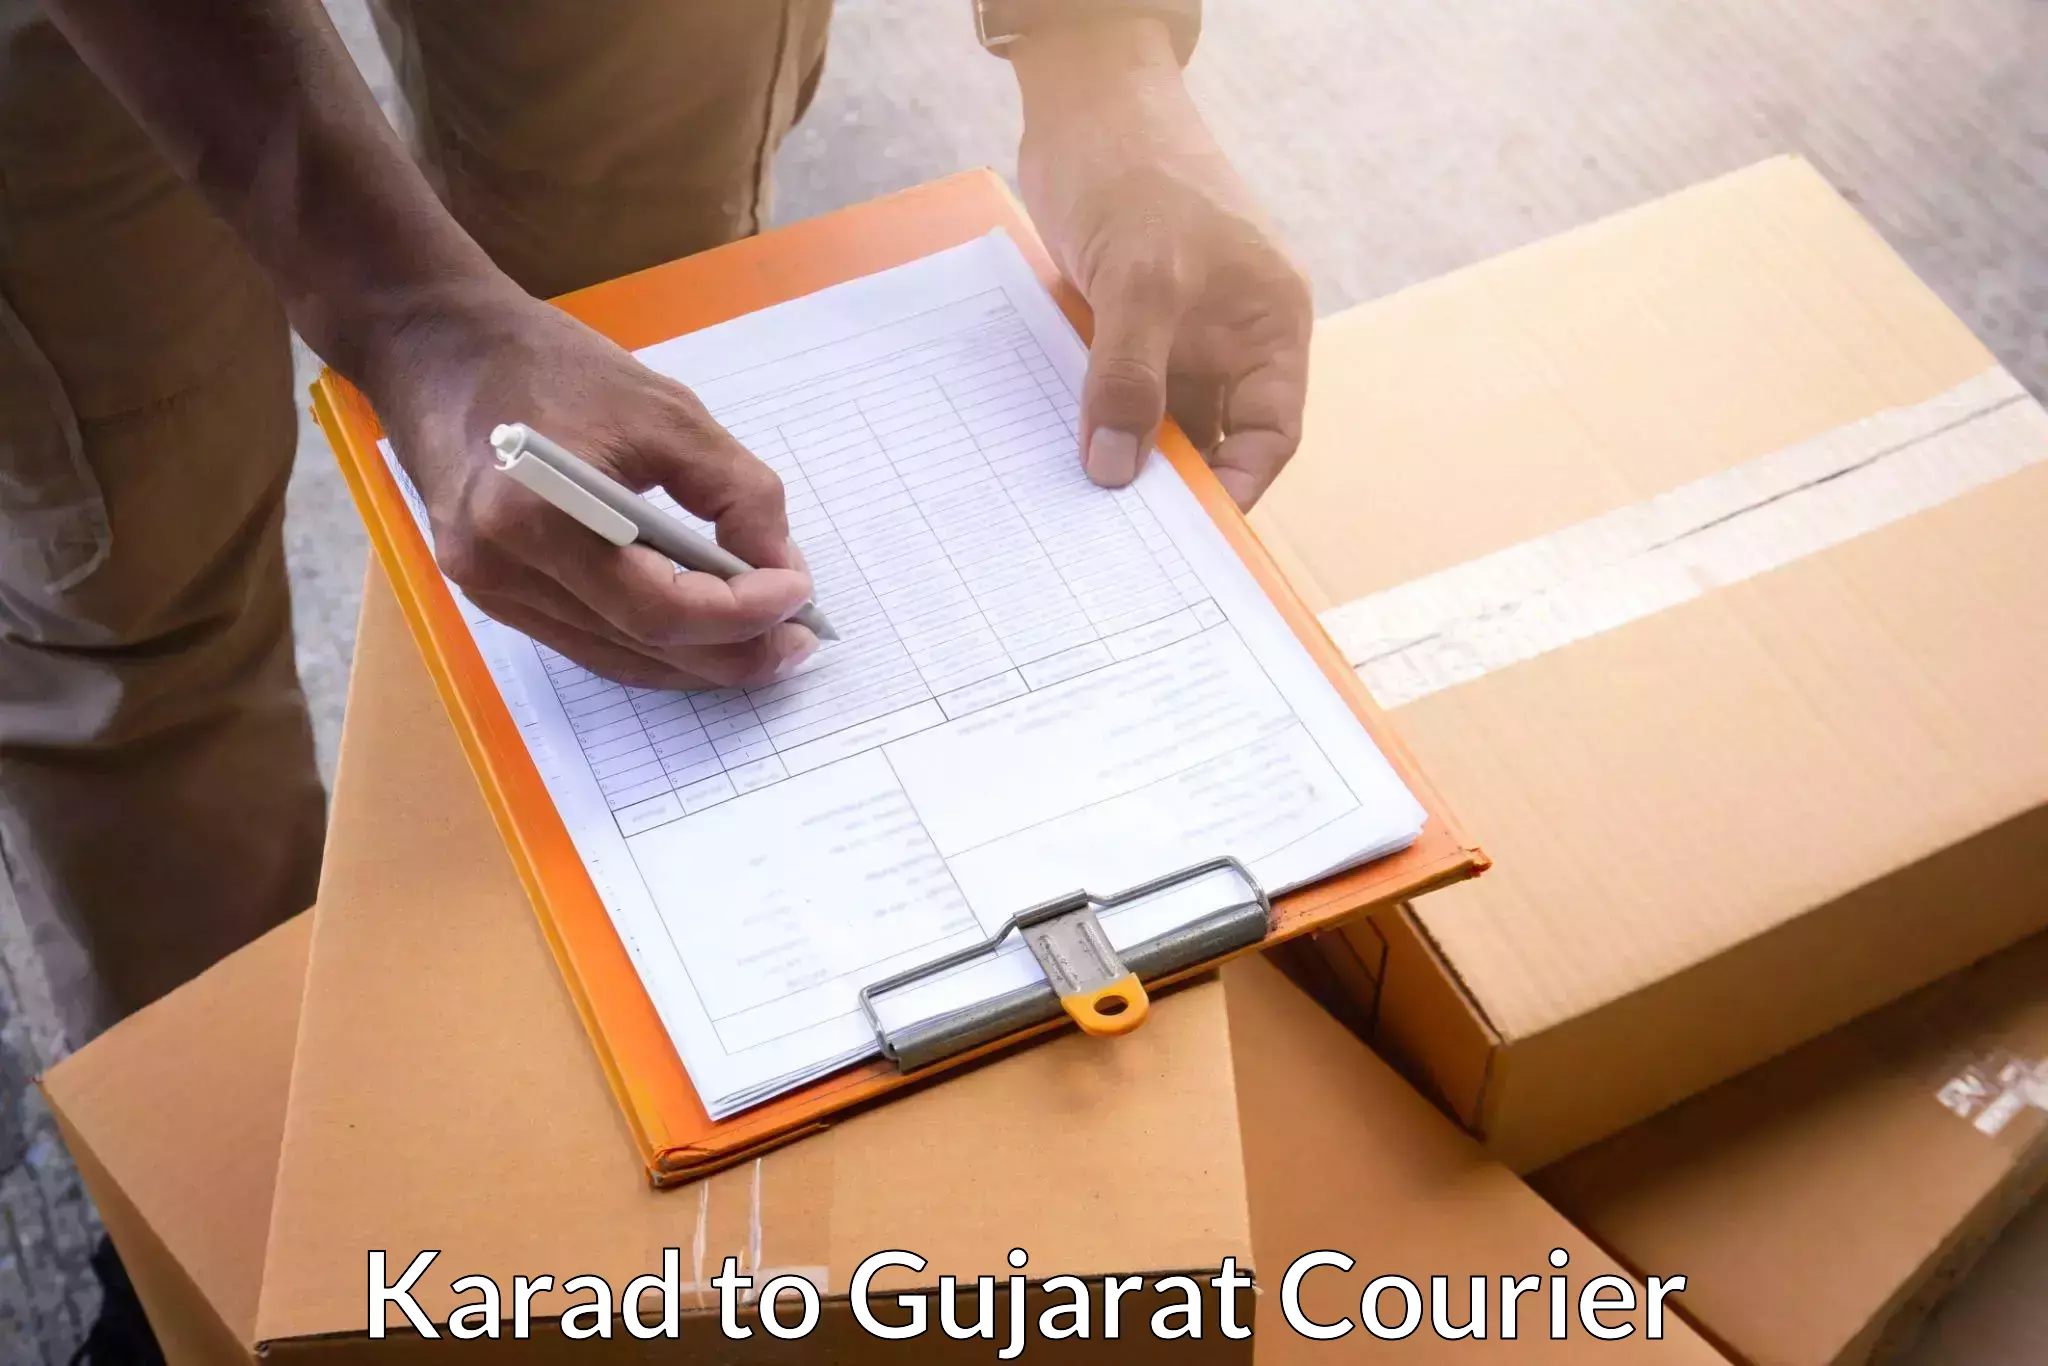 Secure shipping methods Karad to Gandhinagar